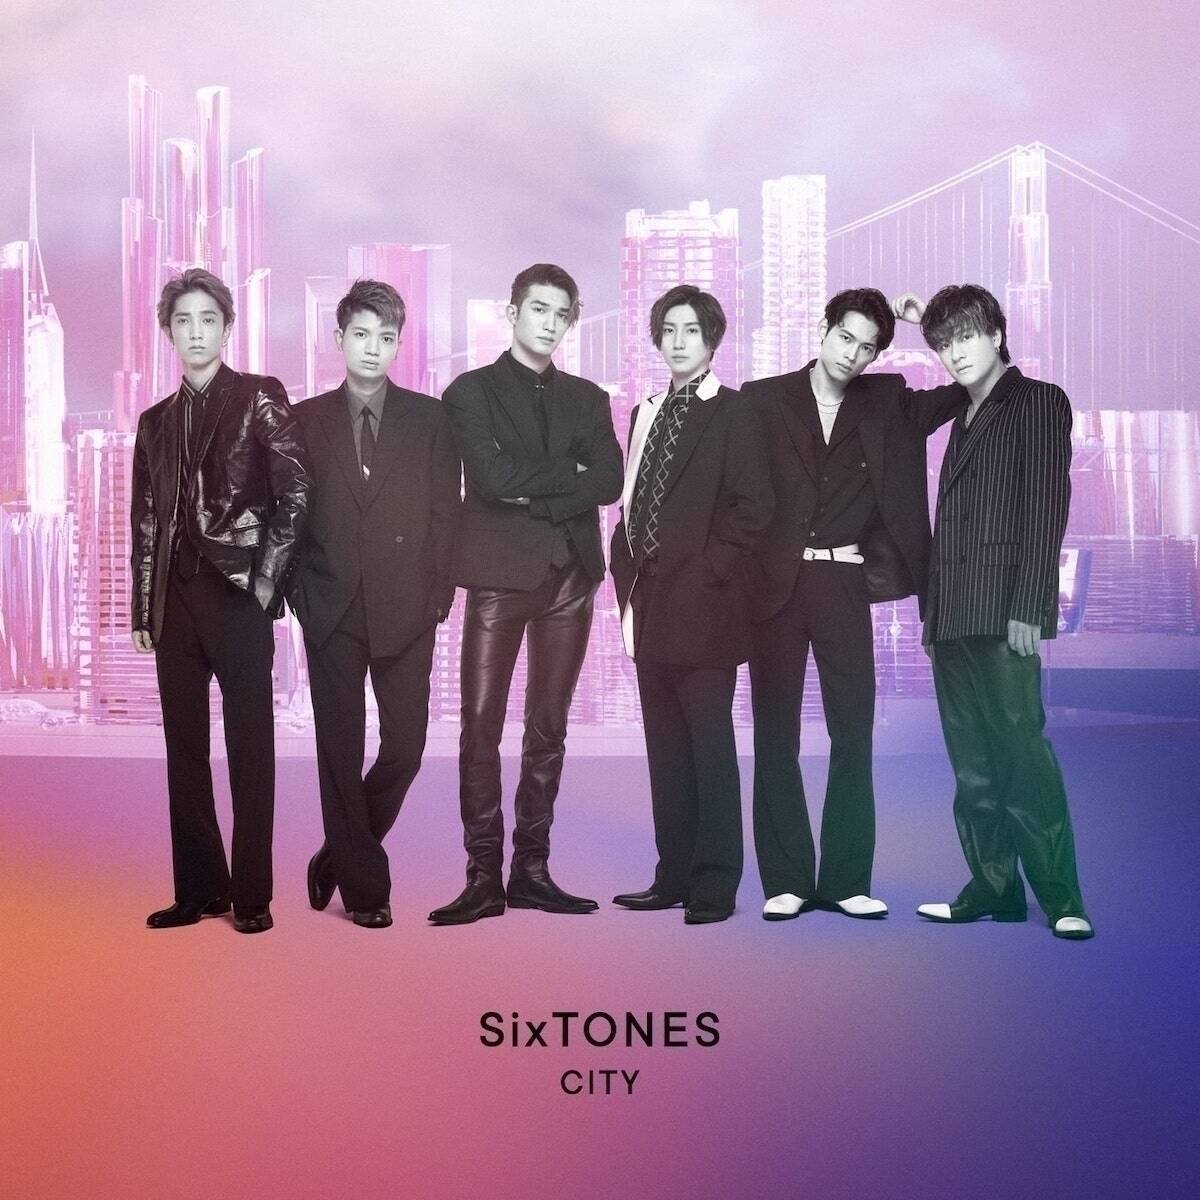 SixTONES ノンジャンル・ボーダレスな2ndアルバム『CITY』は随所に6人のセンスが光る傑作